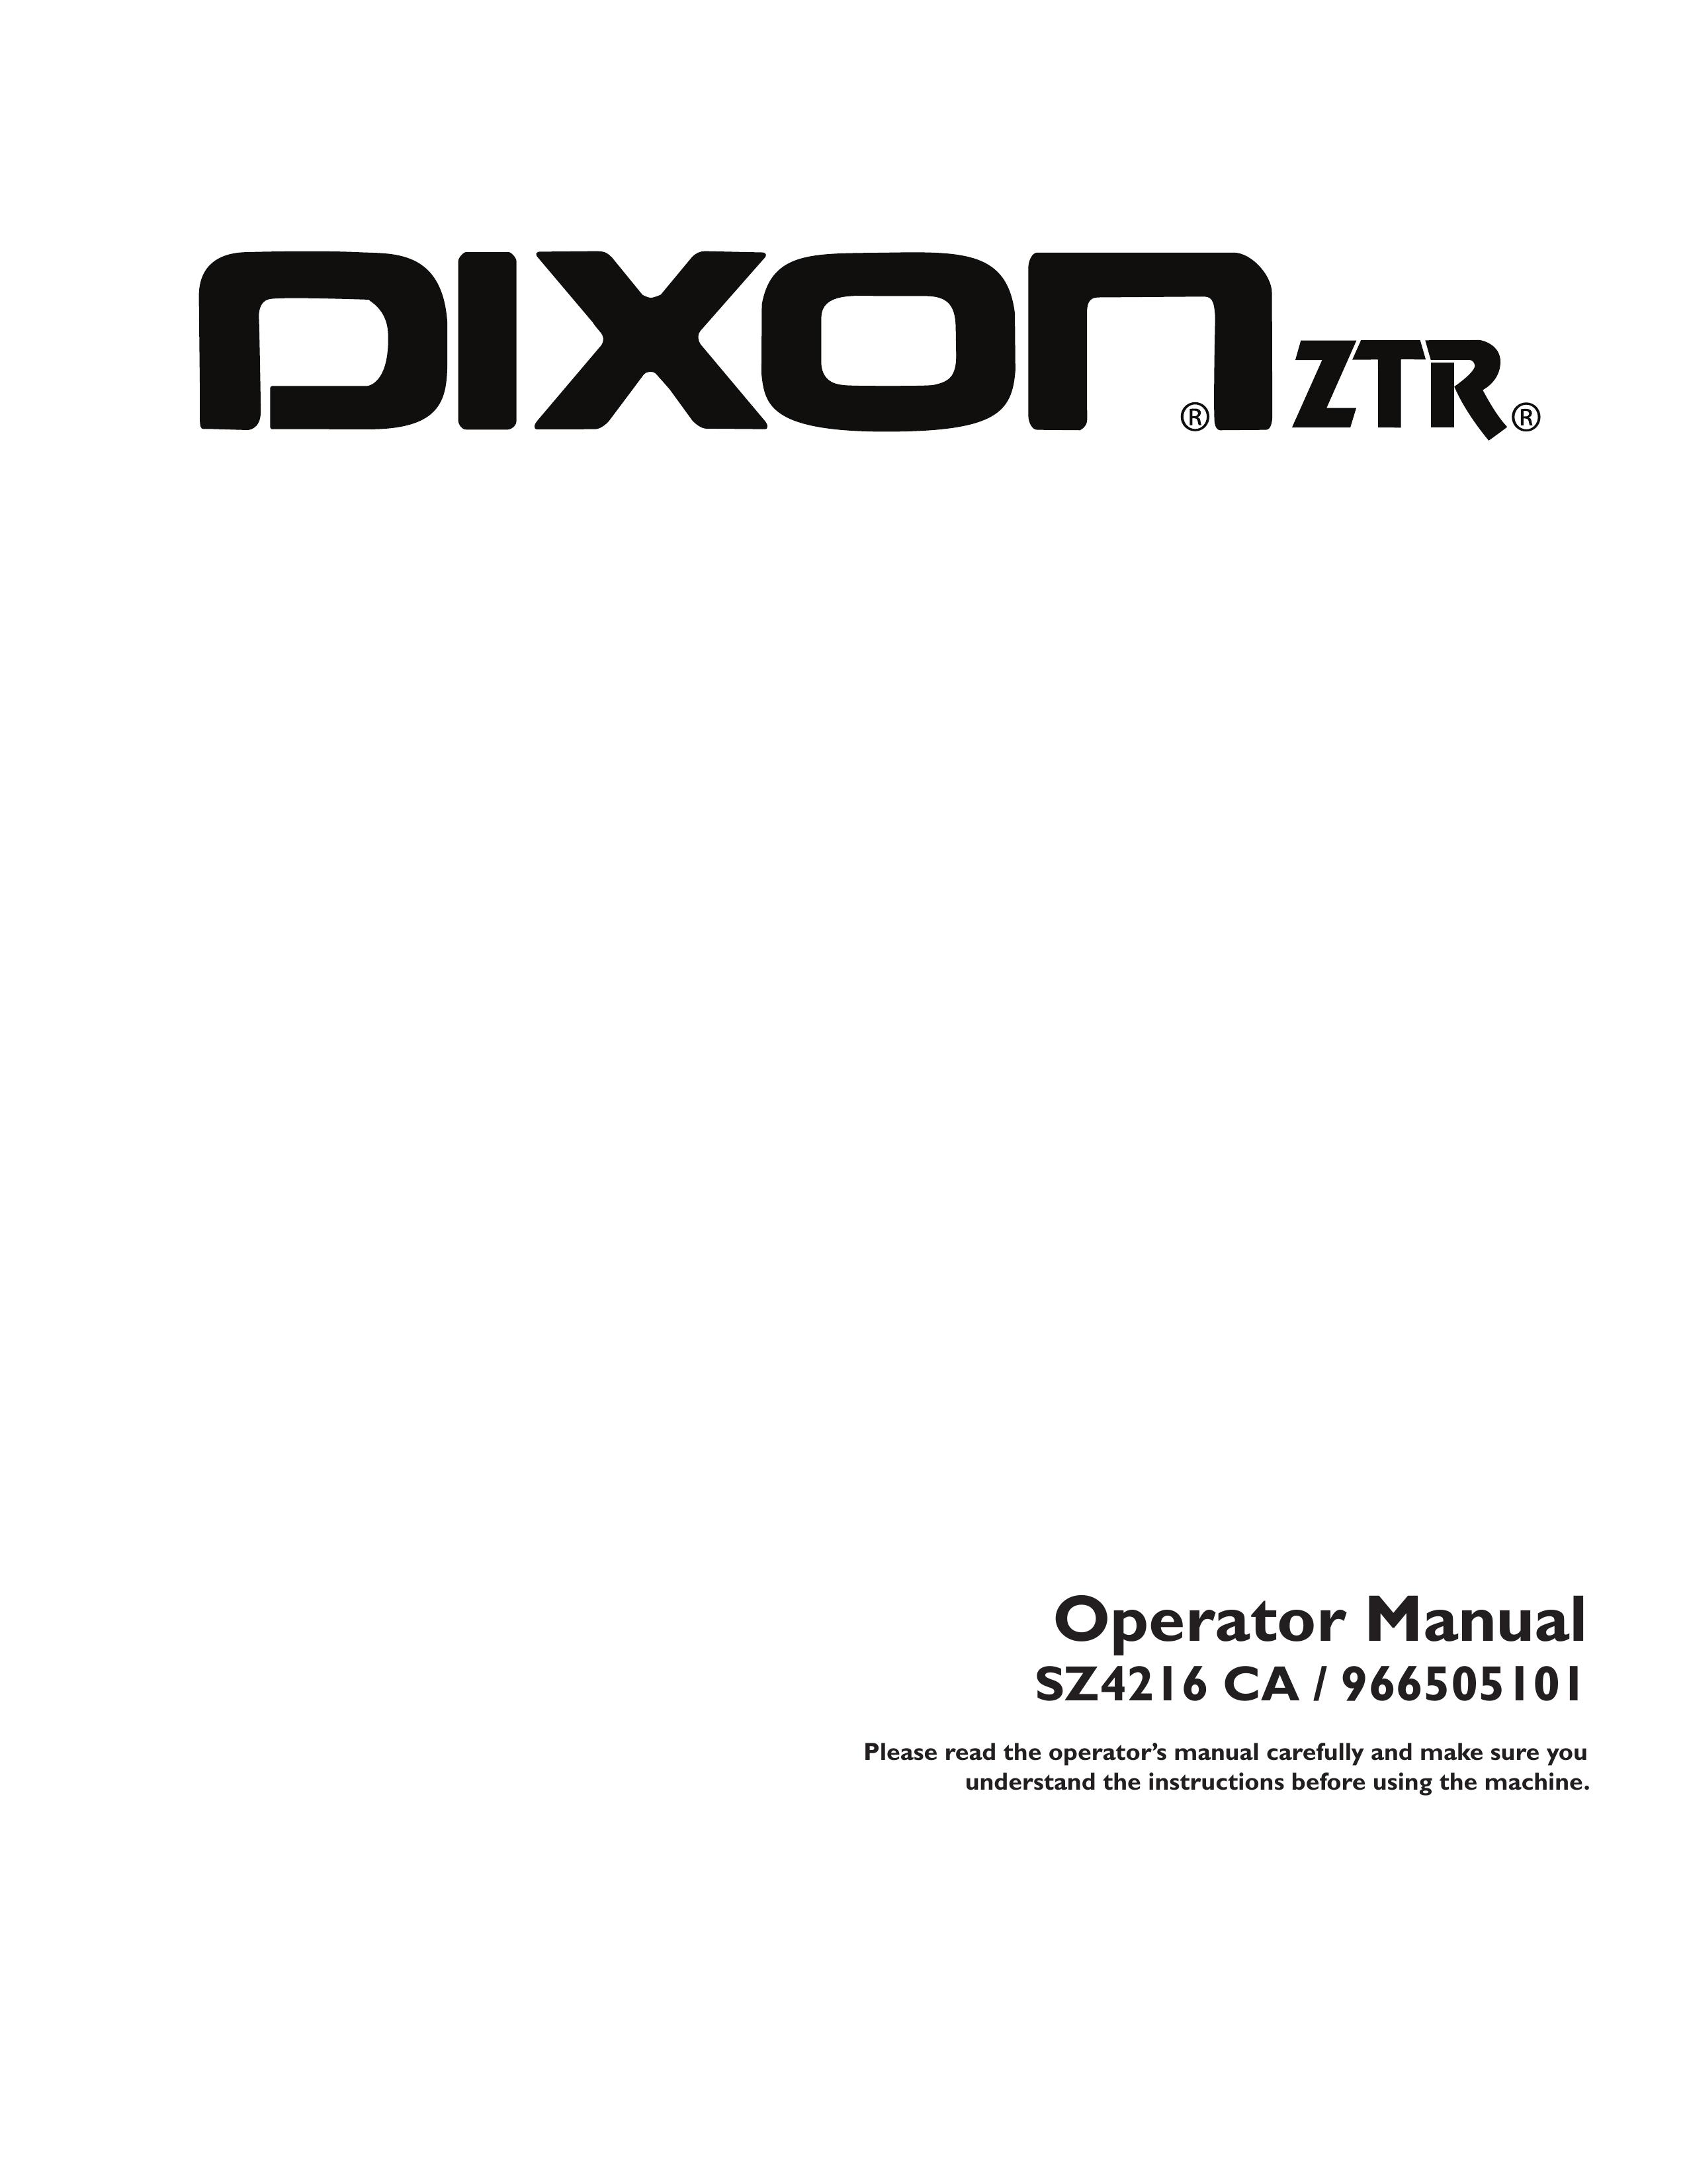 Dixon 115 338927R1 Lawn Mower User Manual